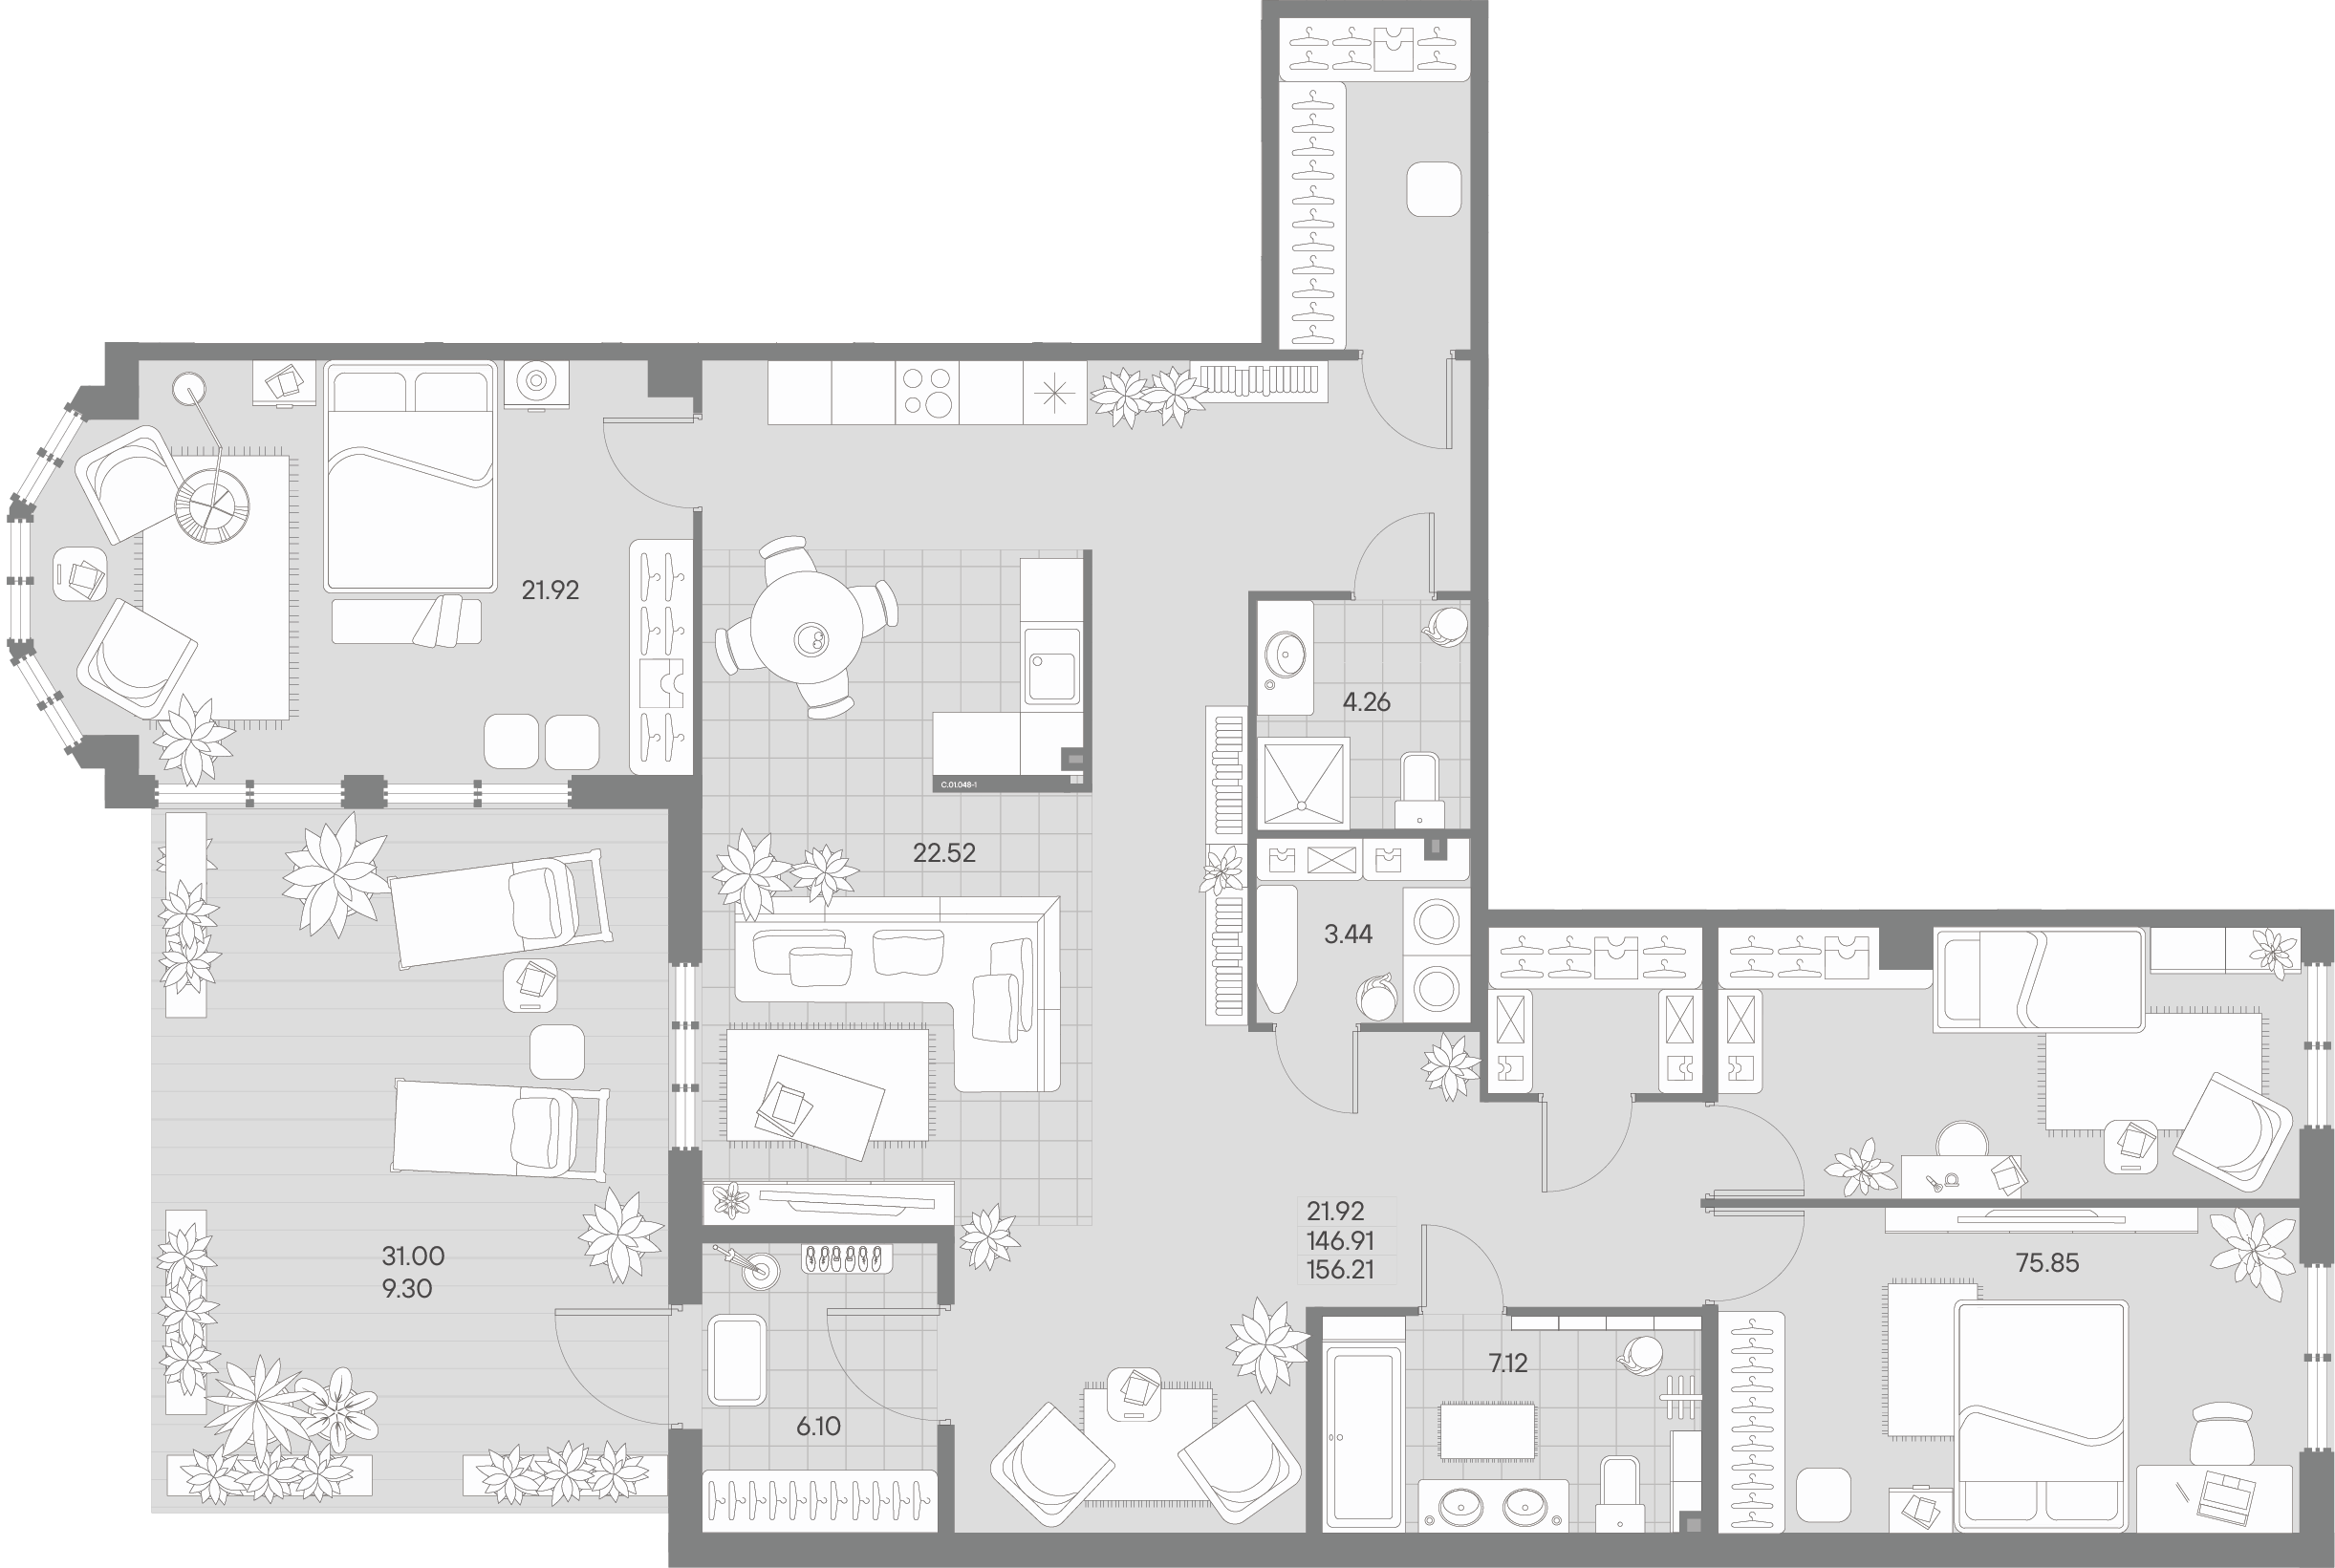 3-комнатная квартира  №48-1 в AMO: 156.21 м², этаж 1 - купить в Санкт-Петербурге